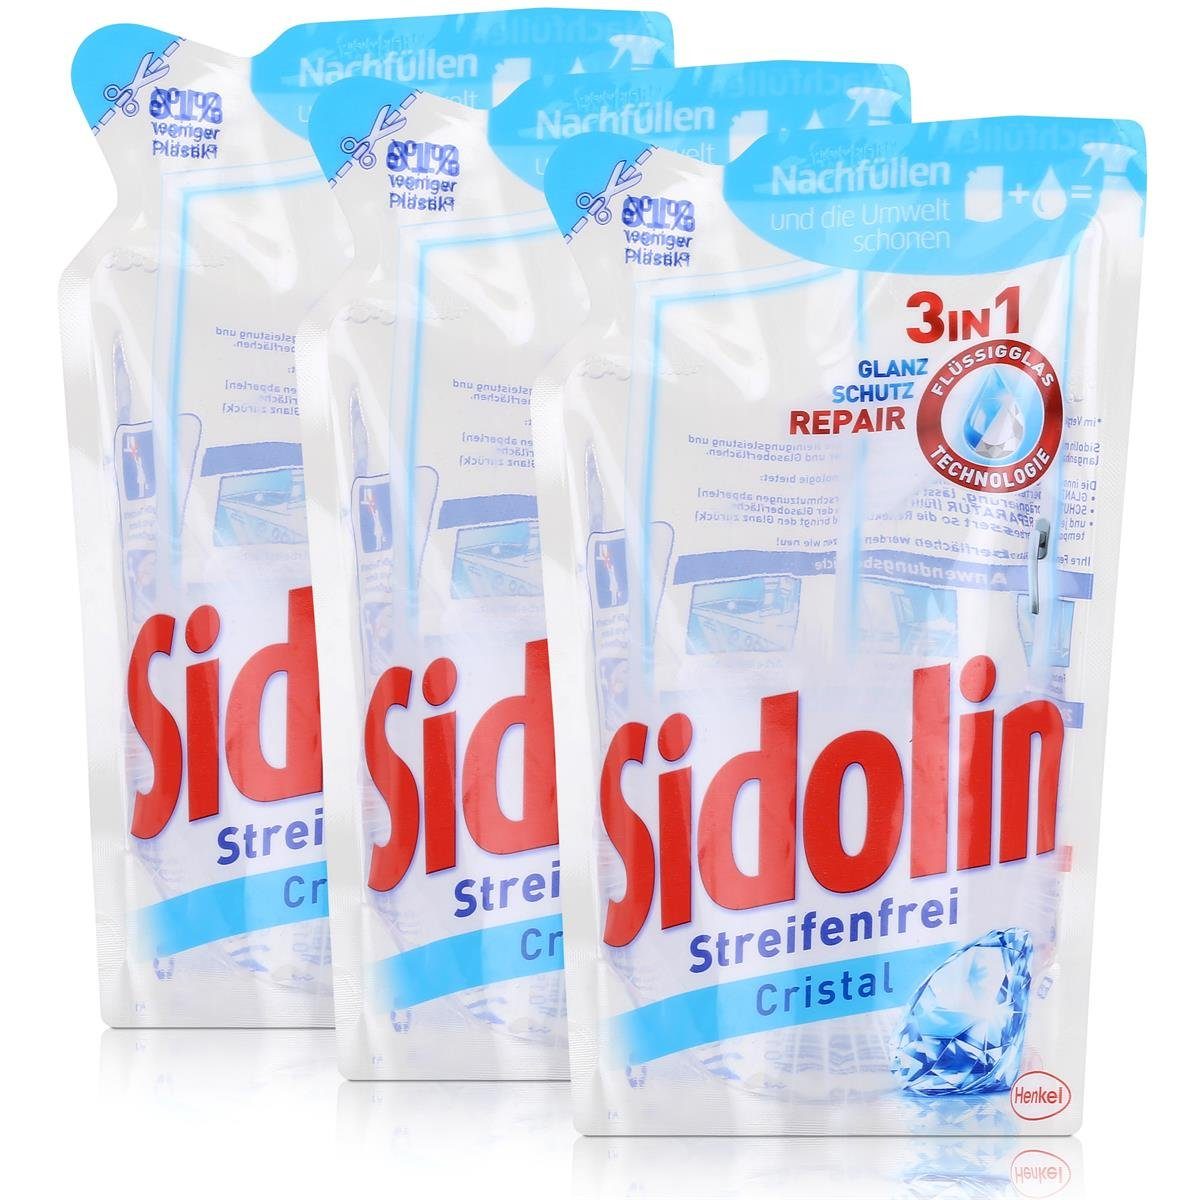 SIDOLIN Sidolin Streifenfrei Cristal Nachfüller 250ml - Glasreiniger (3er Pack Glasreiniger